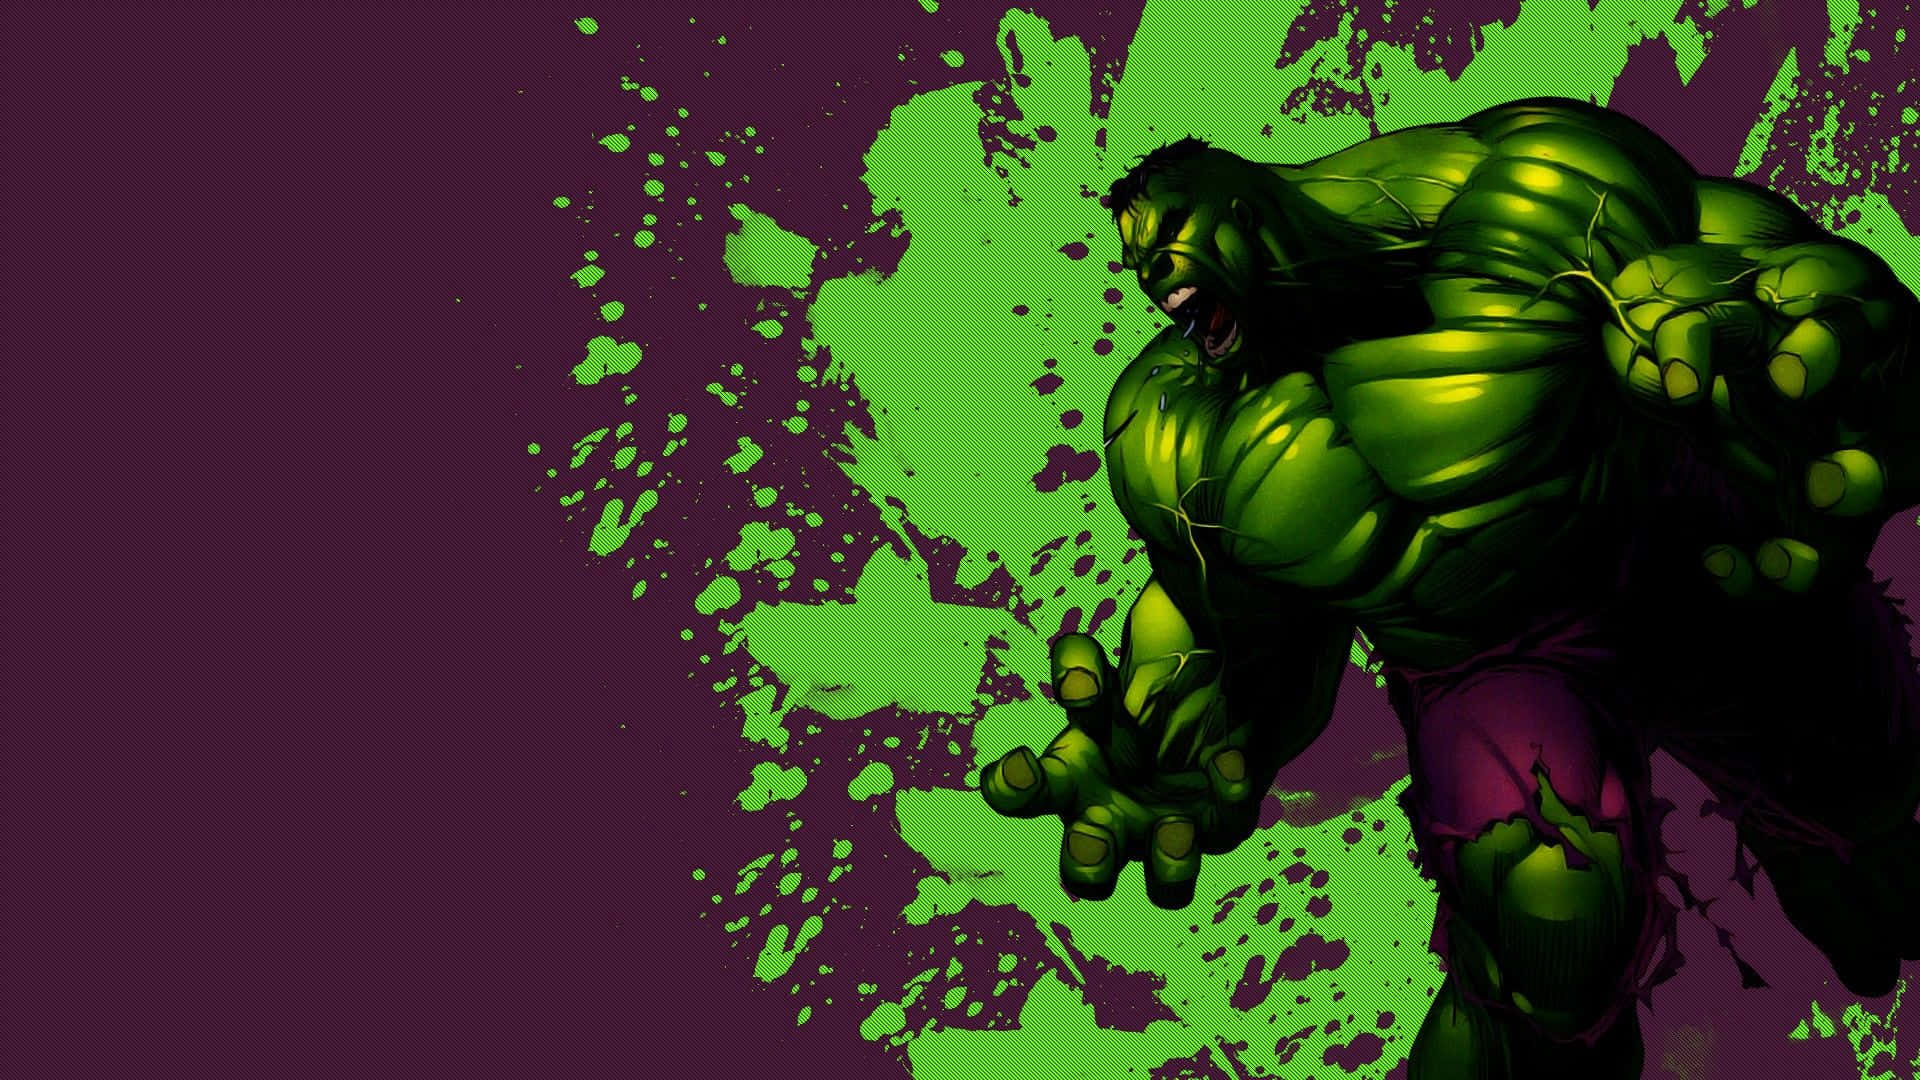 I Am The Incredible Hulk